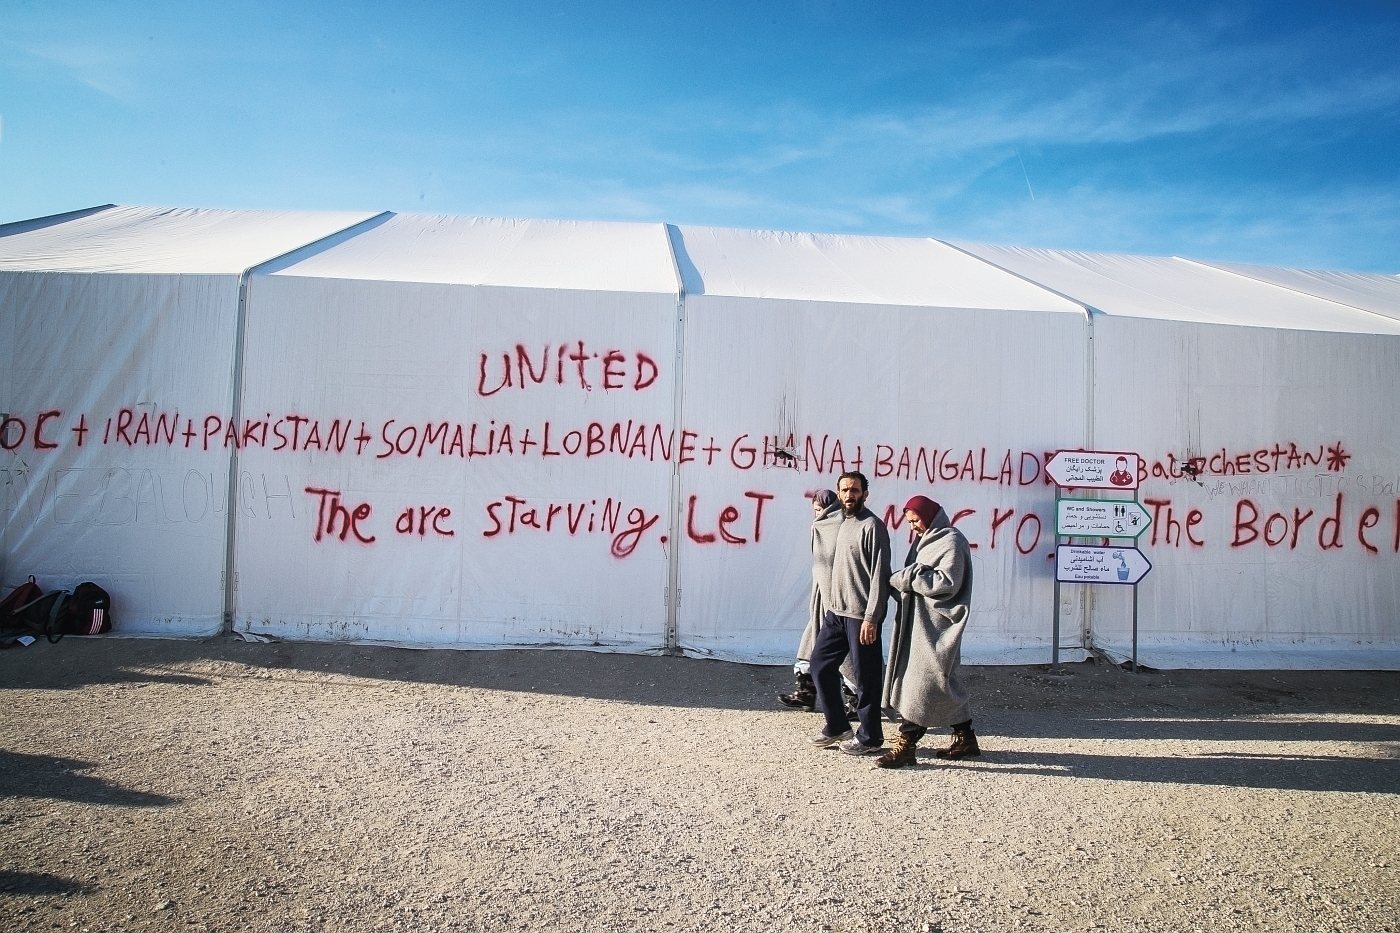 Obóz dla uchodźców w greckiej wiosce Idomeni, fot. Nicola Zolin